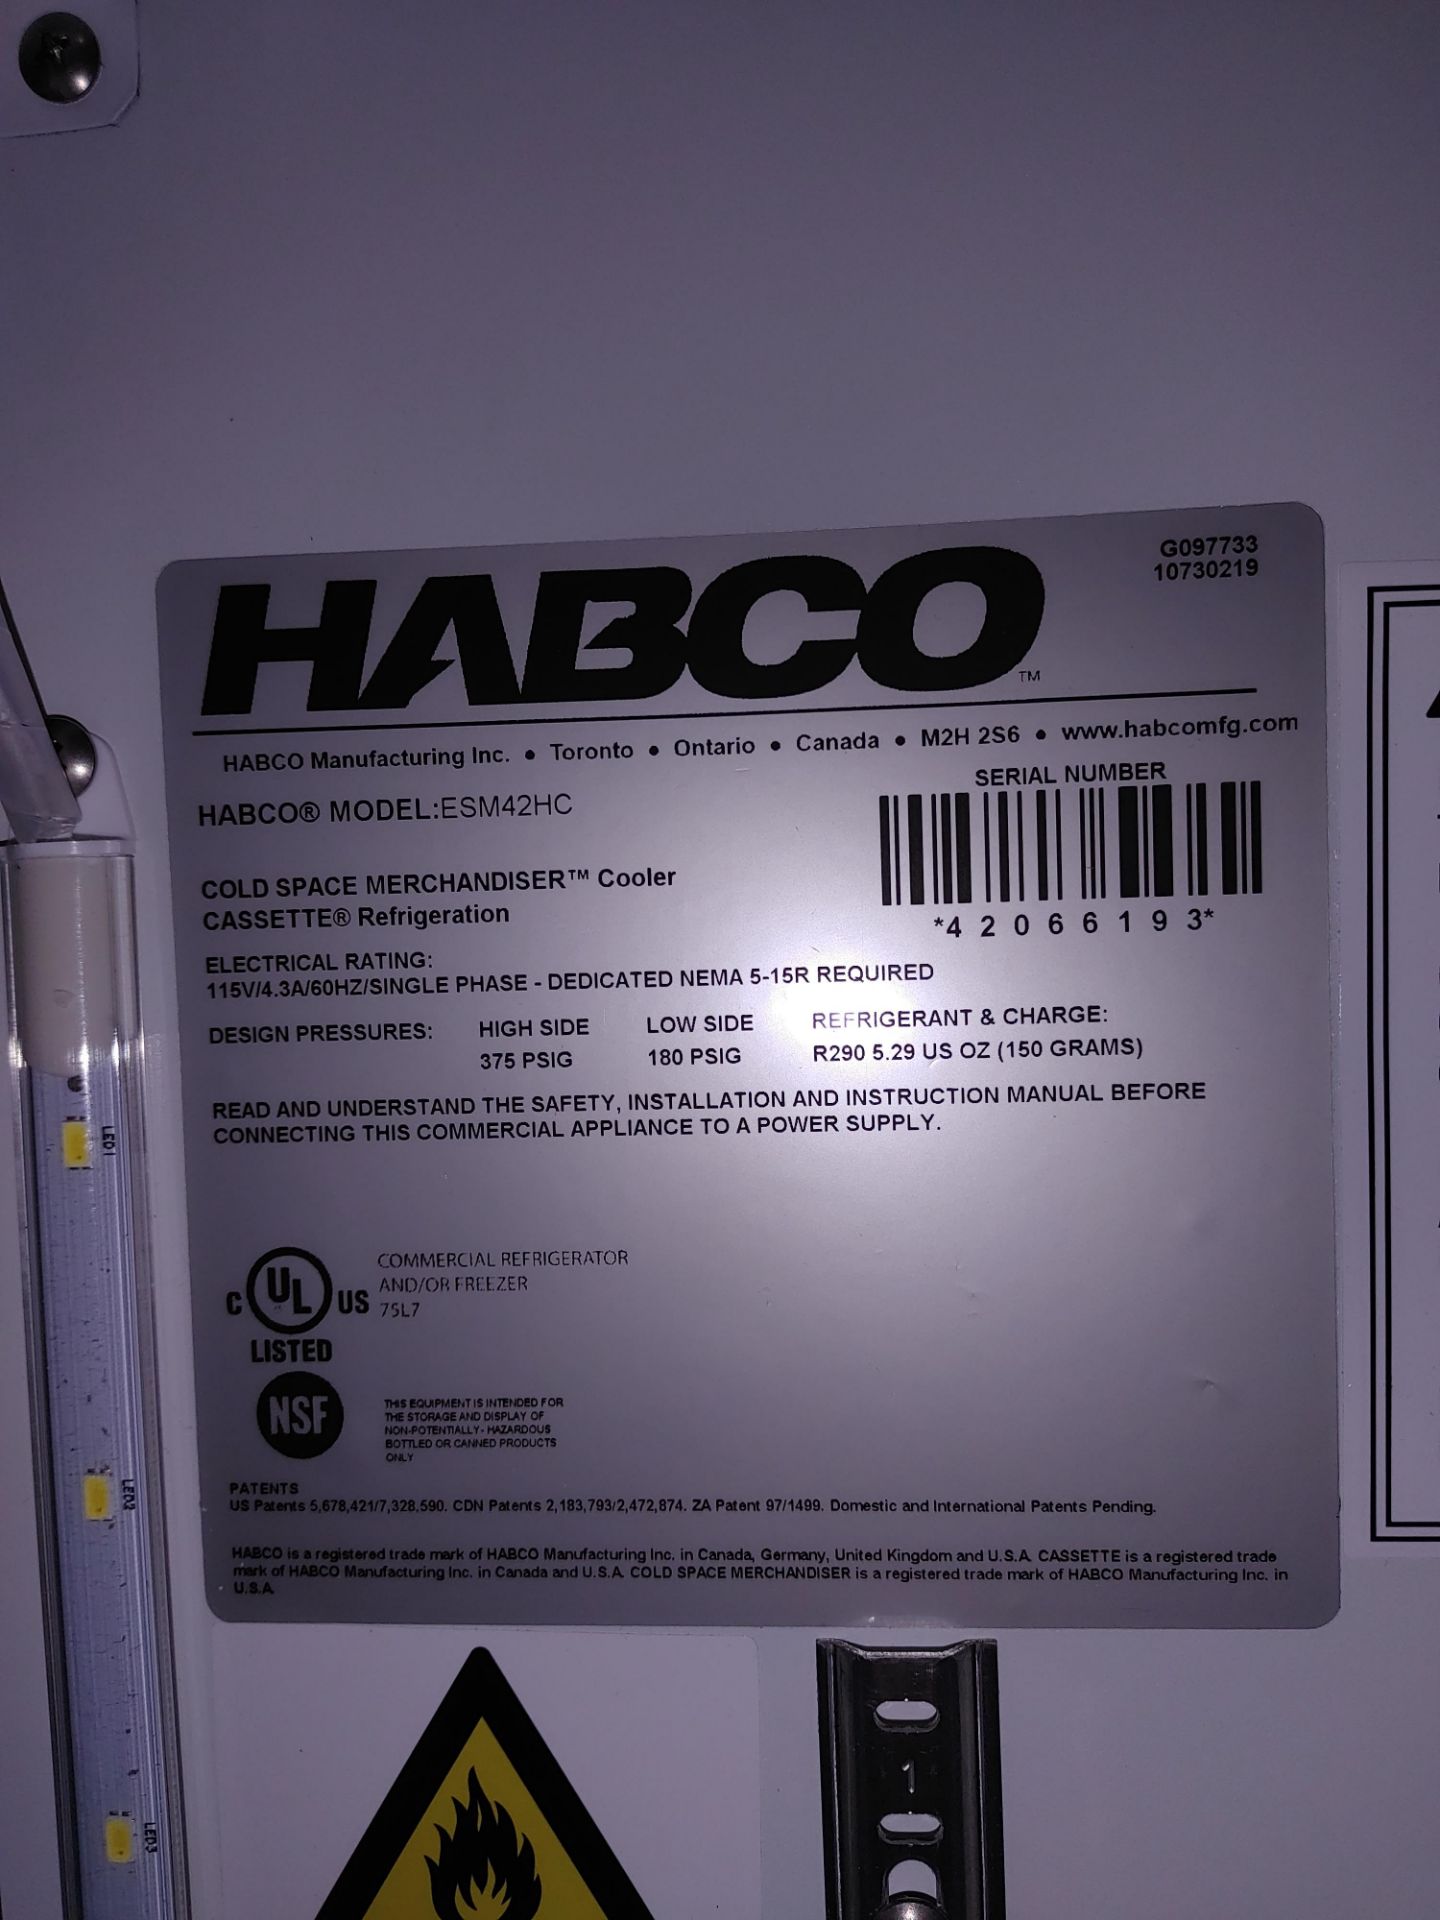 Habco "ESM42HC" 2 Door Refrigerator S/N 42066193 - Image 2 of 2